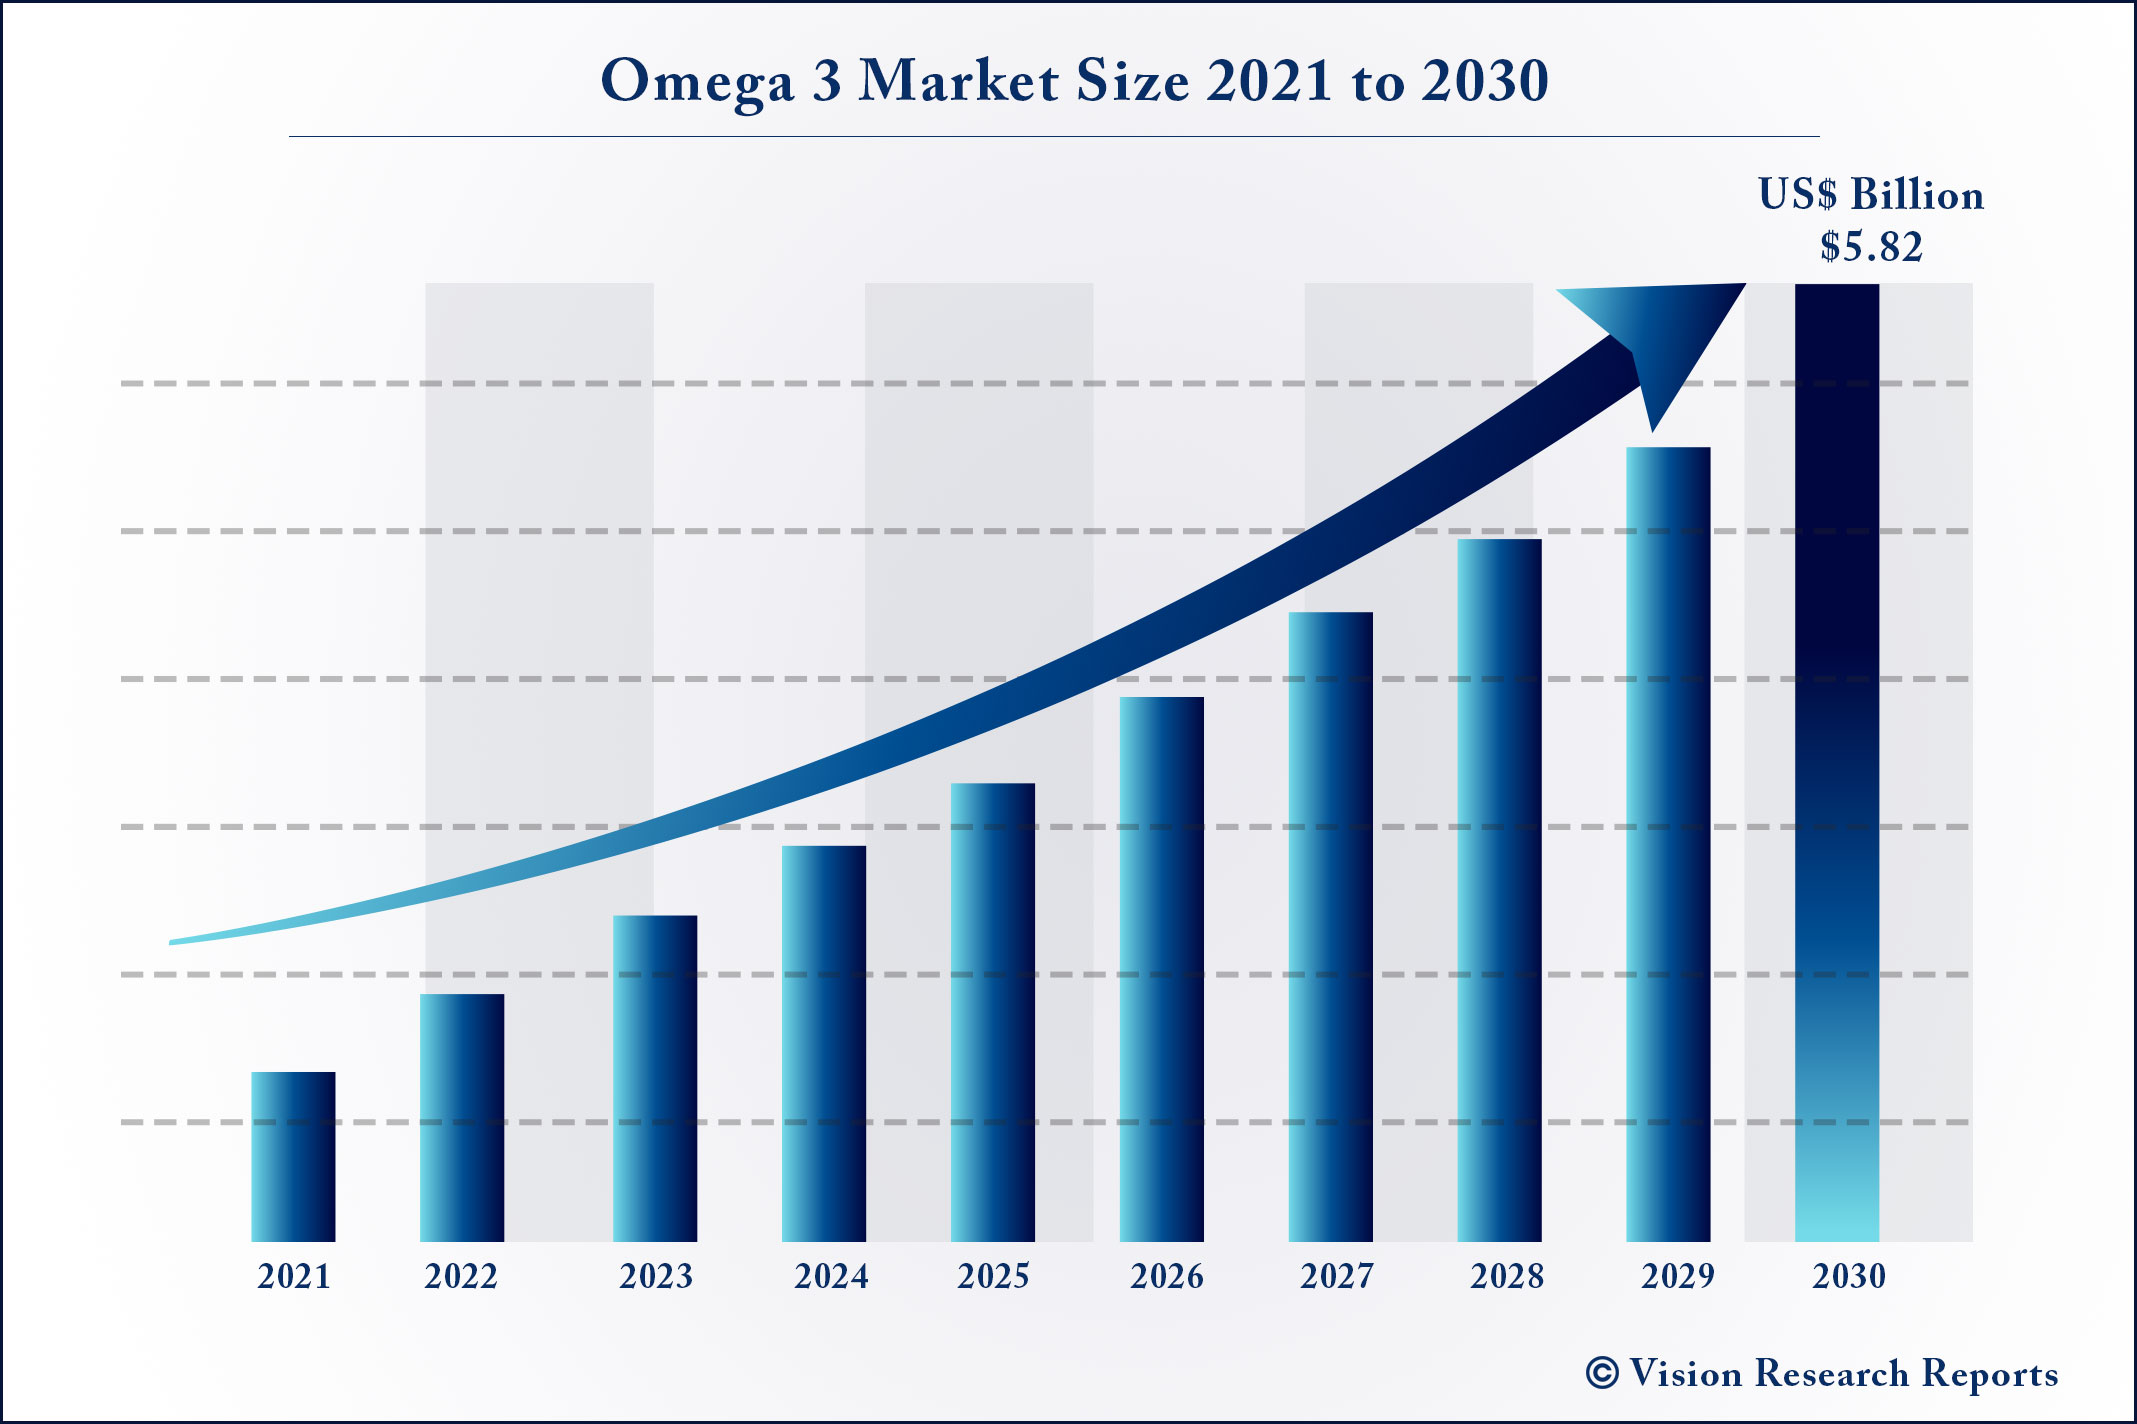 Omega 3 Market Size 2021 to 2030